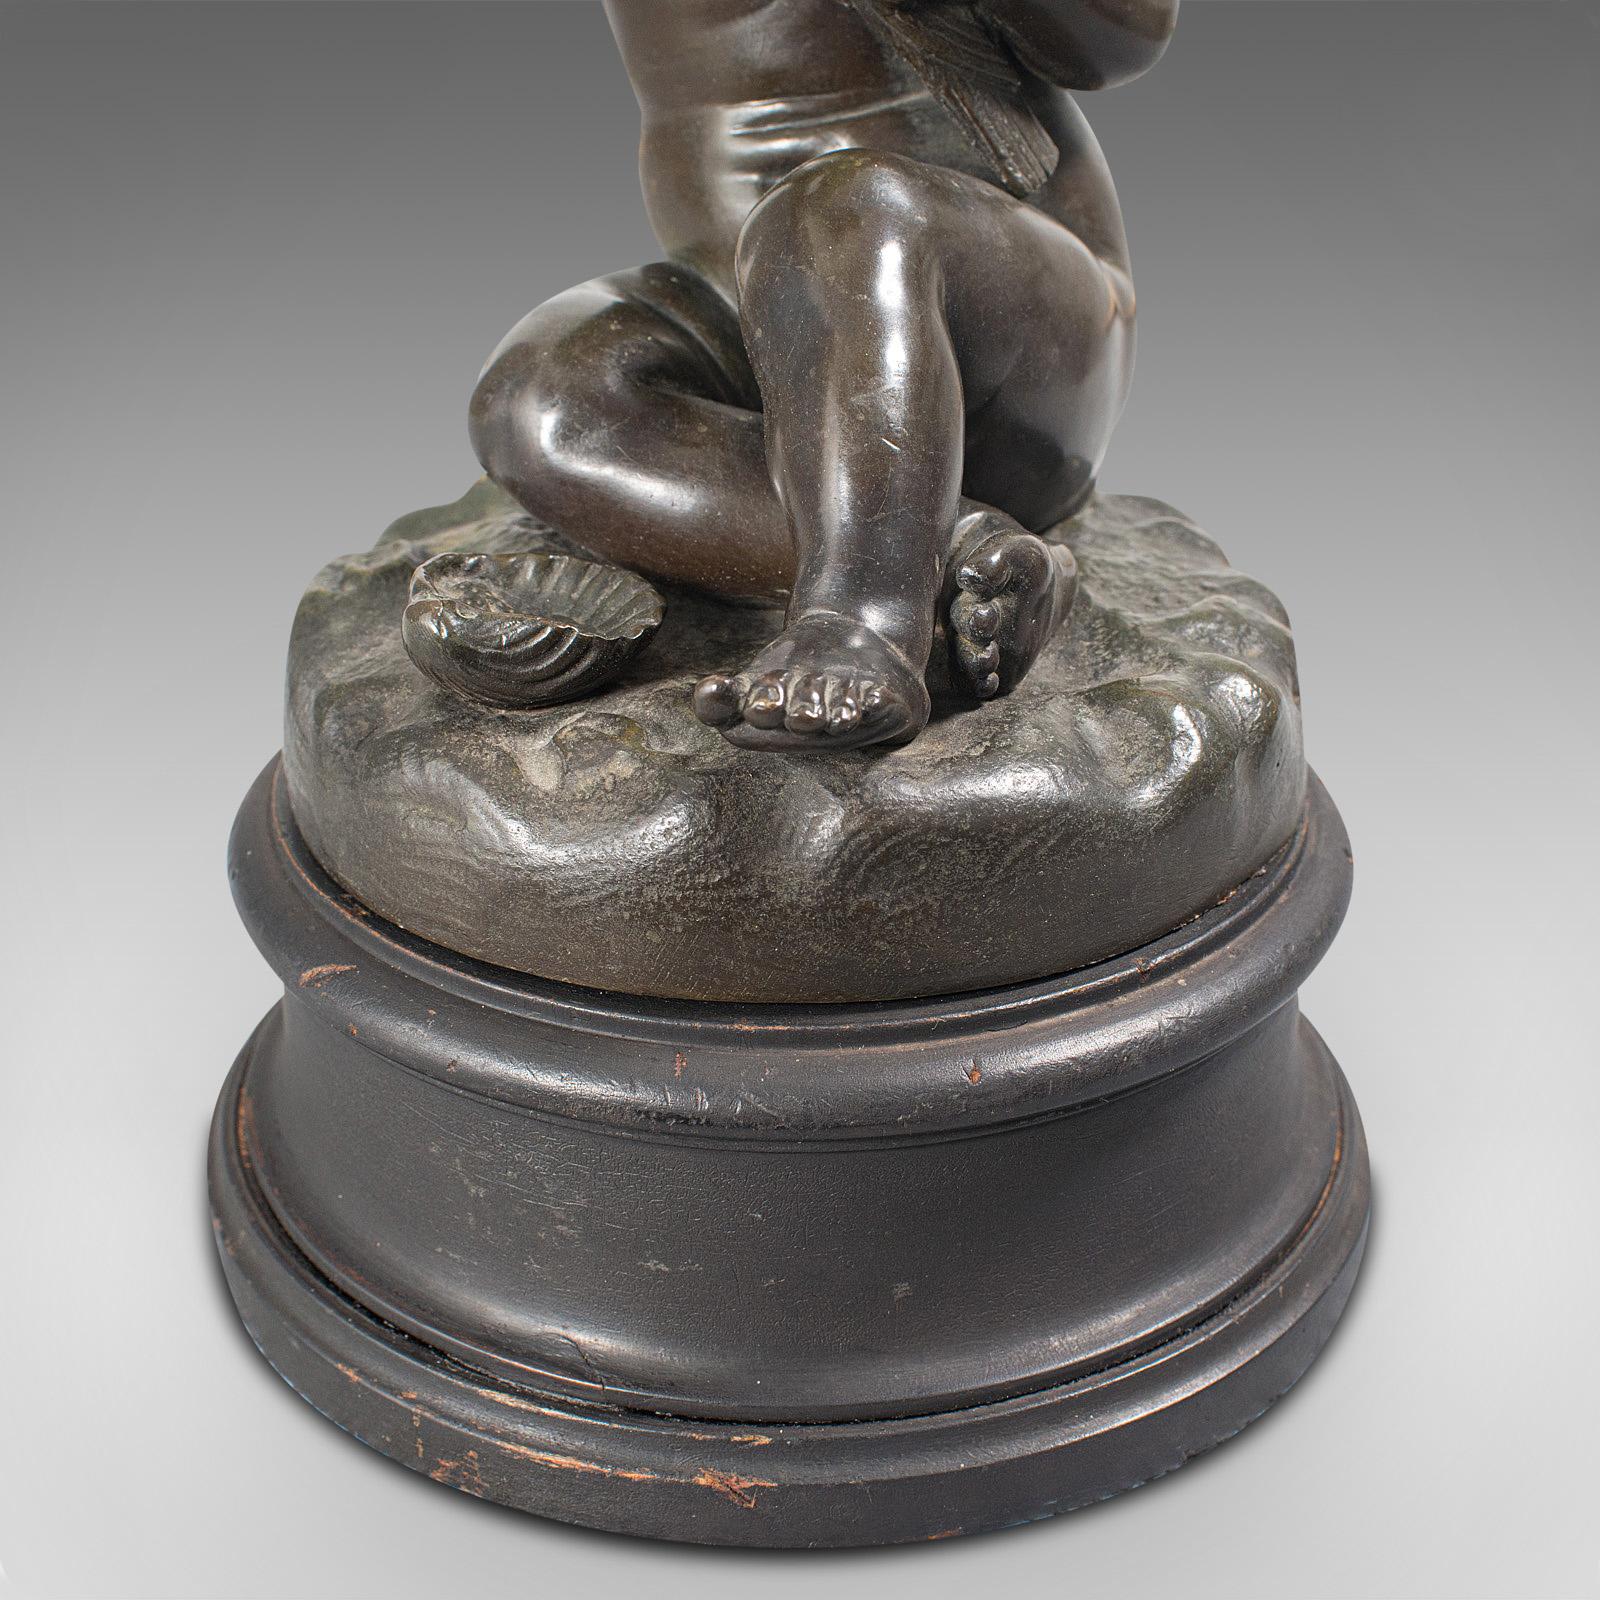 Antique Putto Statue, French, Bronze, Cherub Figure, Late 19th Century For Sale 7